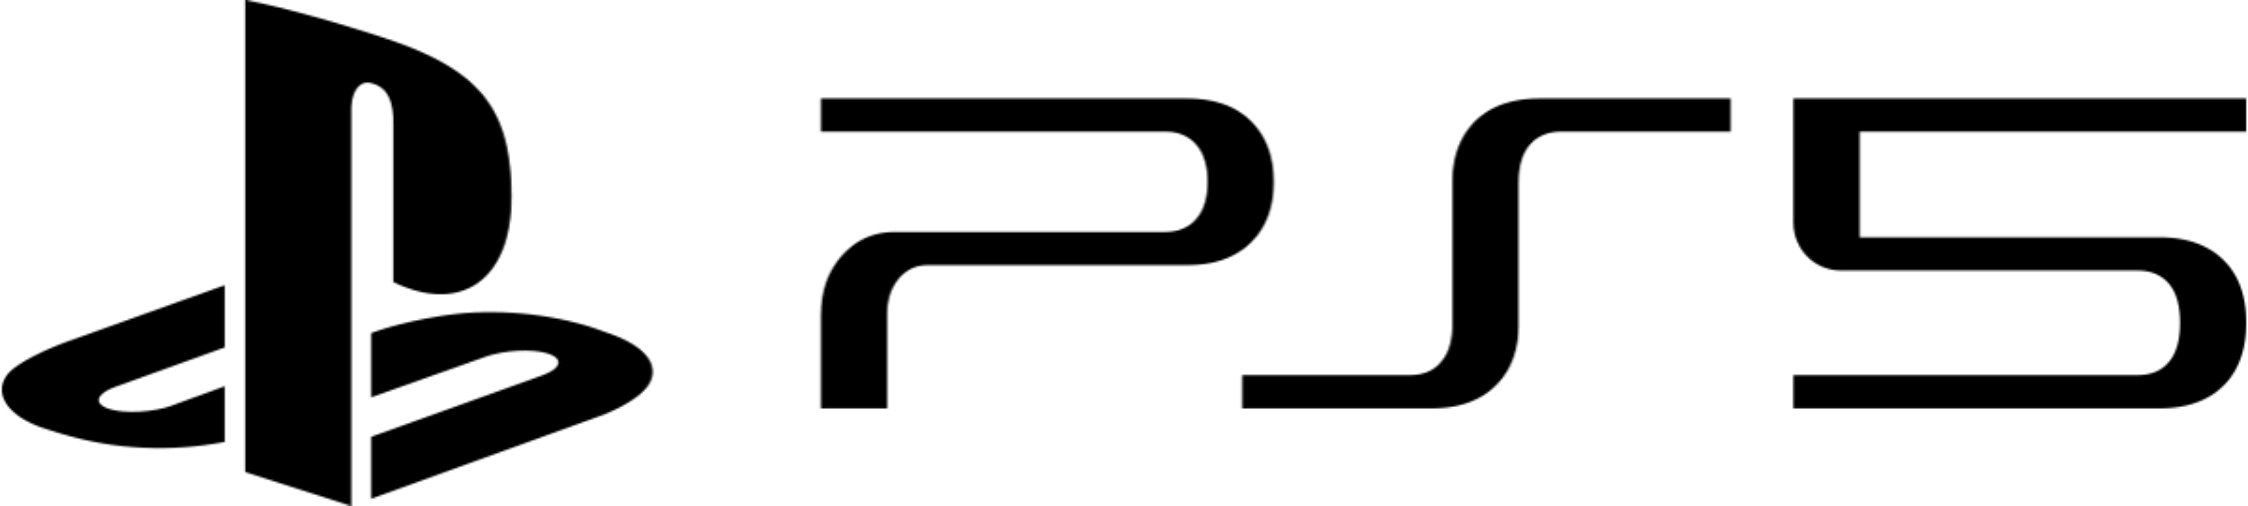 Логотип платформы PS5